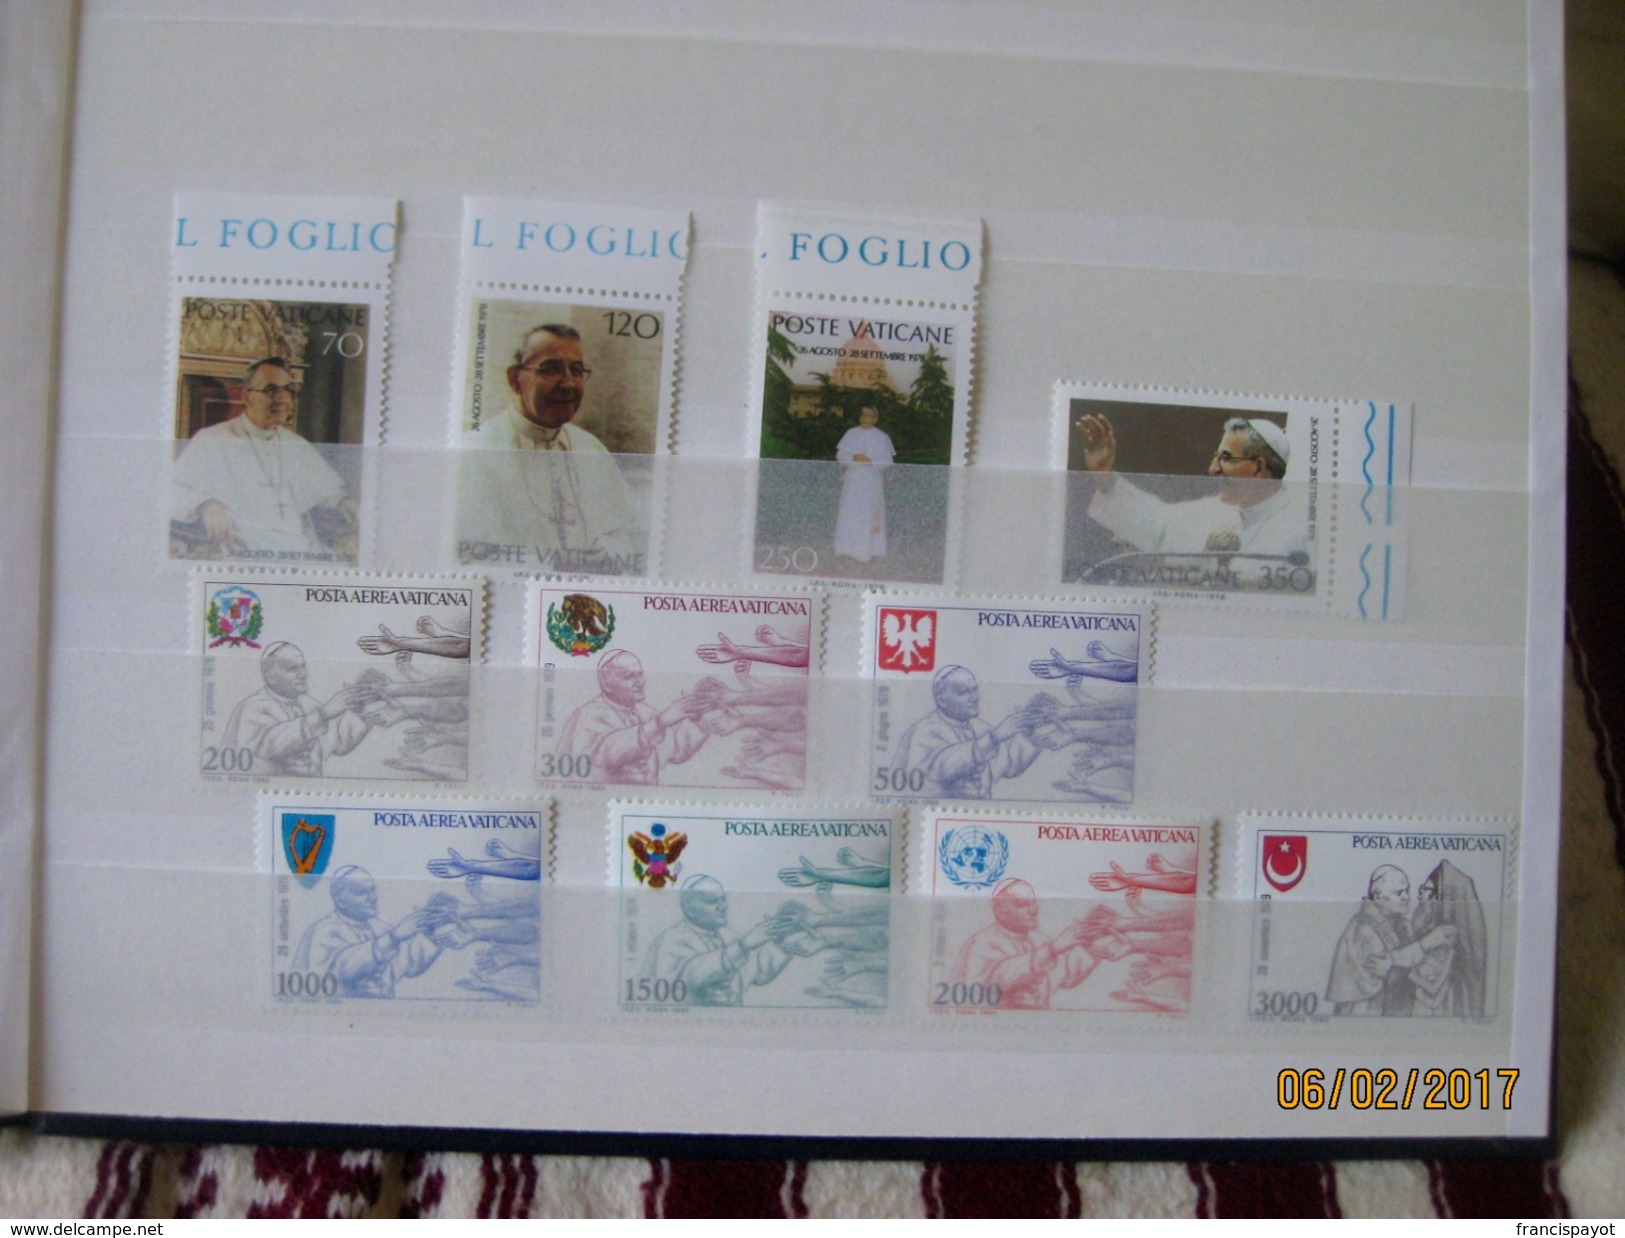 Vatican: 119 stamps + 4 envelops